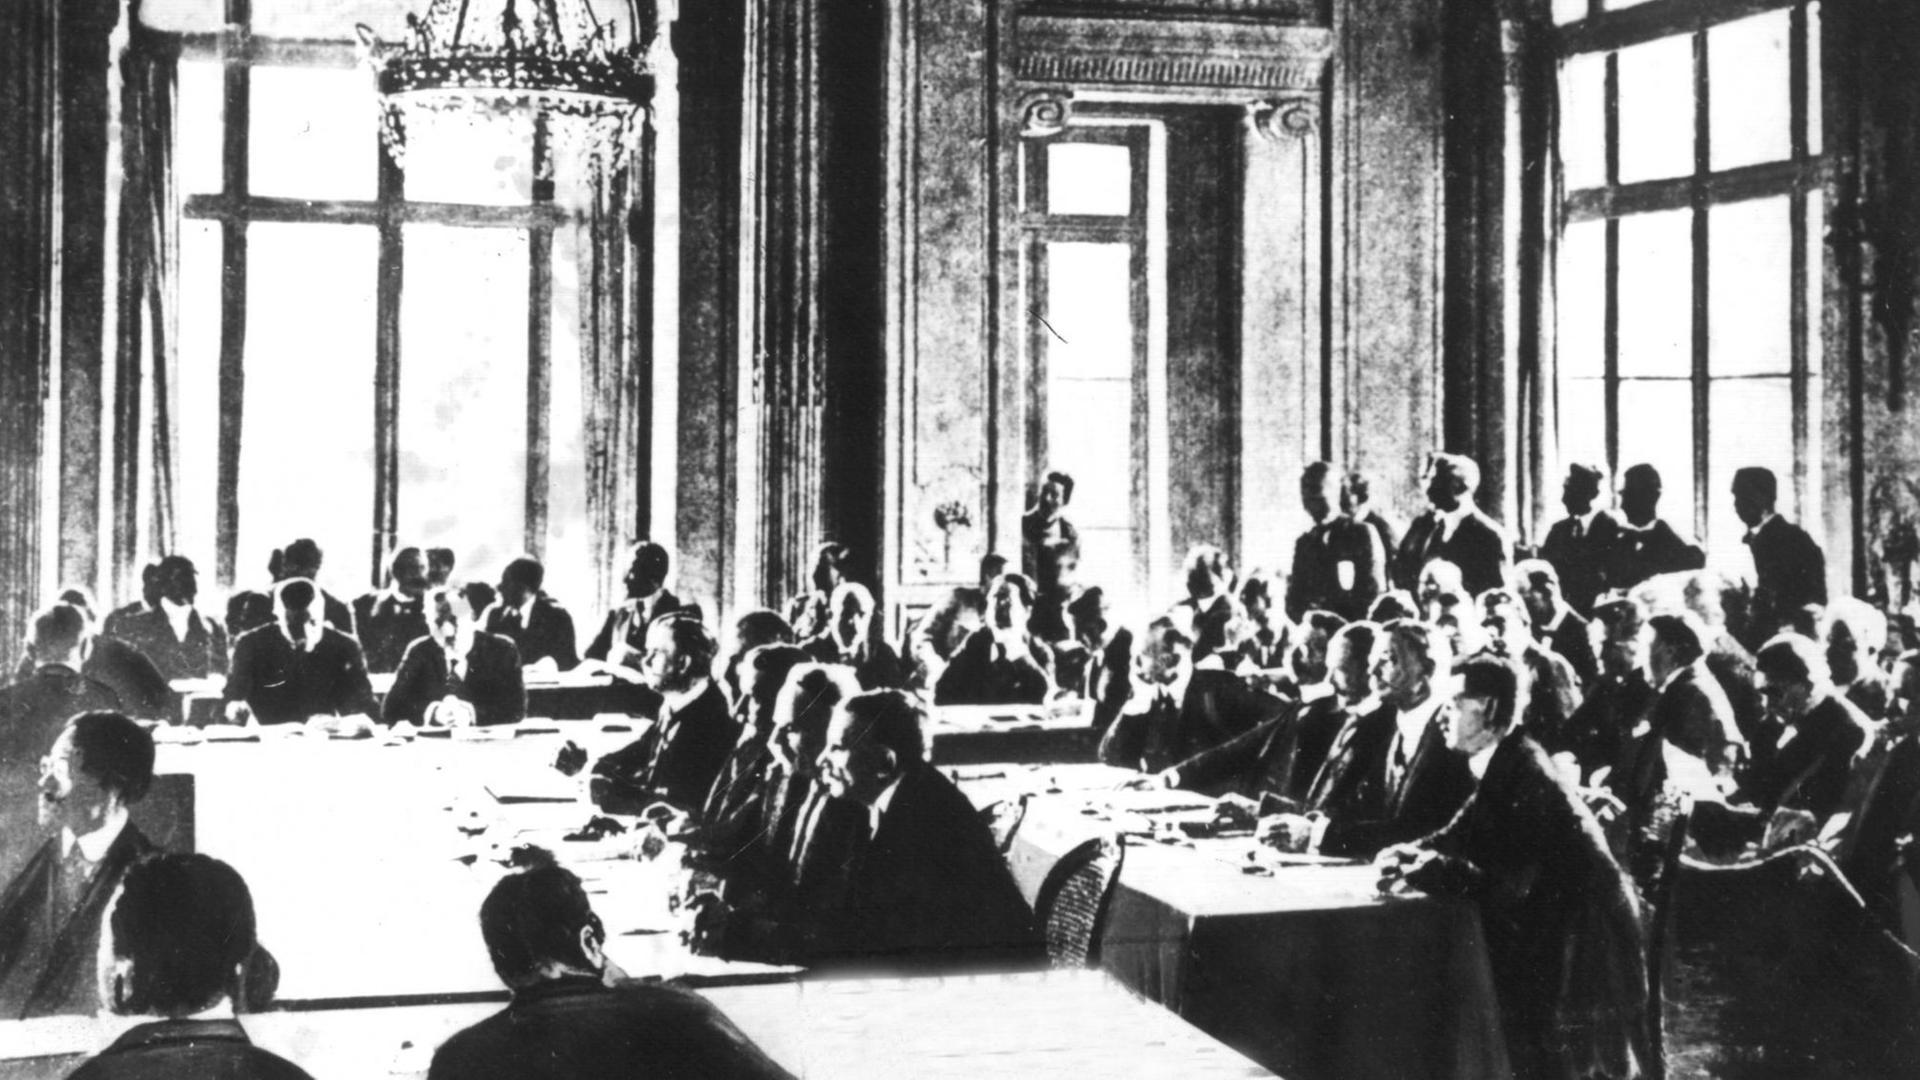 Die Sitzung vom 7. Mai 1919, in der der Vertragstext der deutschen Delegation zugestellt wurde. Der Versailler Vertrag war der wichtigste der Pariser Vorortverträge, die 1919/20 den 1. Weltkrieg beendeten. Der Versailler Vertrag wurde am 28.6.1919 im Versailler Schloß zwischen Deutschland und 27 alliierten und assoziierten Mächten unterzeichnet und trat am 20.1.1920 in Kraft. Ohne deutsche Beteiligung wurde ab dem 18.1.1919 in Paris der Text des Friedensvertrages zwischen Wilson, Lloyd George, Clemenceau und Orlando (Die "Großen Vier") ausgearbeitet. Am 7.5.1919 wurde der Text der Deutschen Delegation zugestellt